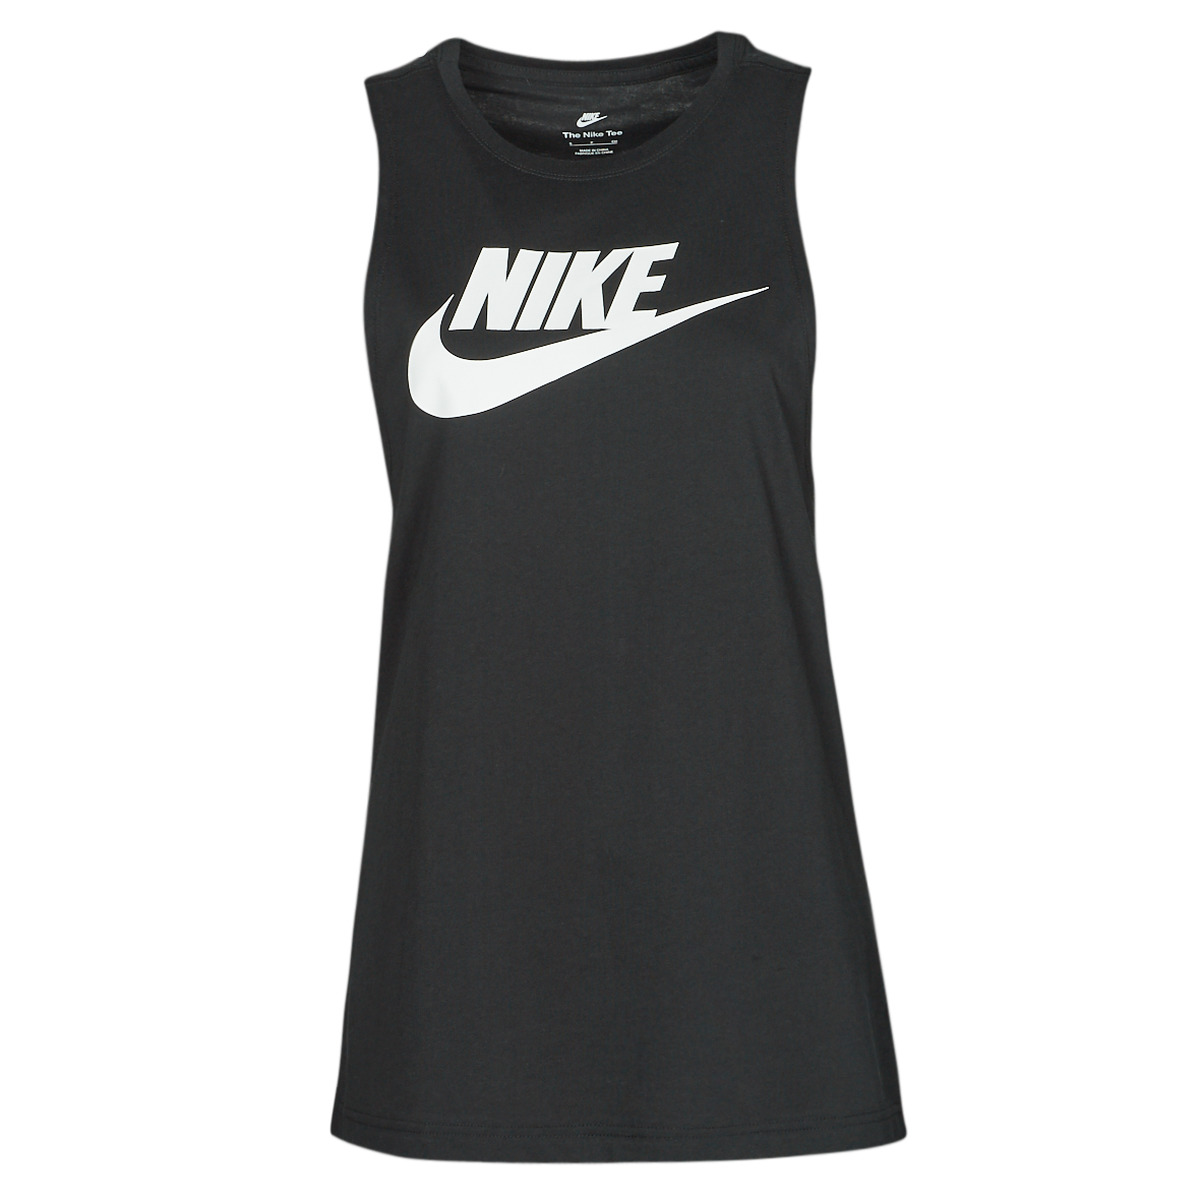 Î‘Î¼Î¬Î½Î¹ÎºÎ±/T-shirts Ï‡Ï‰ÏÎ¯Ï‚ Î¼Î±Î½Î¯ÎºÎ¹Î± Nike NIKE SPORTSWEAR